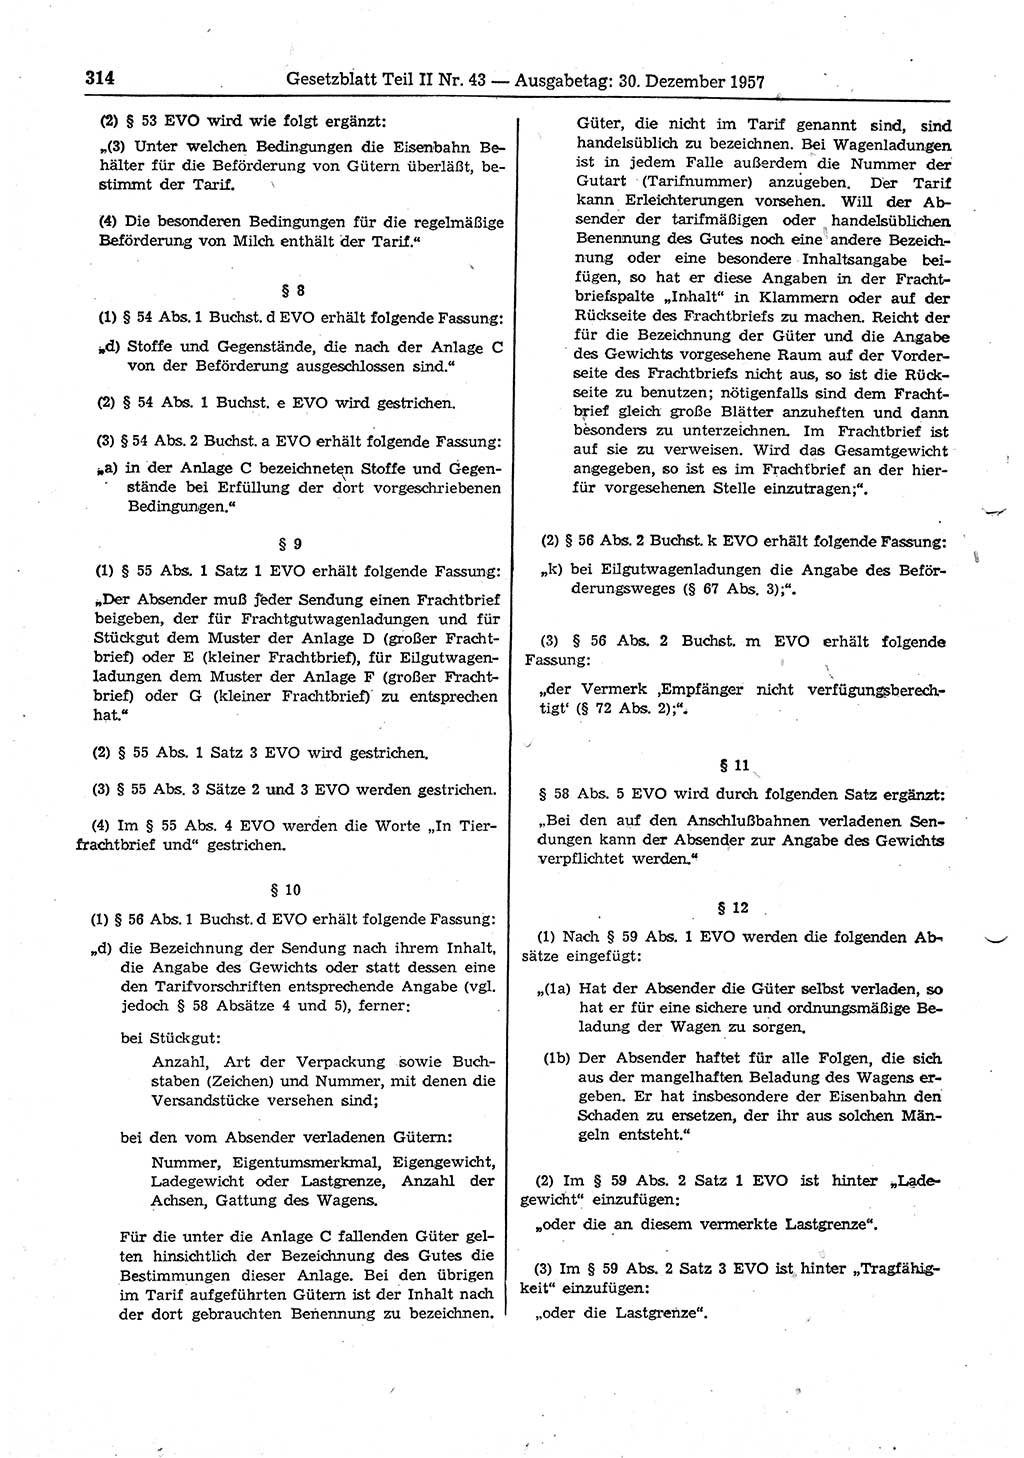 Gesetzblatt (GBl.) der Deutschen Demokratischen Republik (DDR) Teil ⅠⅠ 1957, Seite 314 (GBl. DDR ⅠⅠ 1957, S. 314)